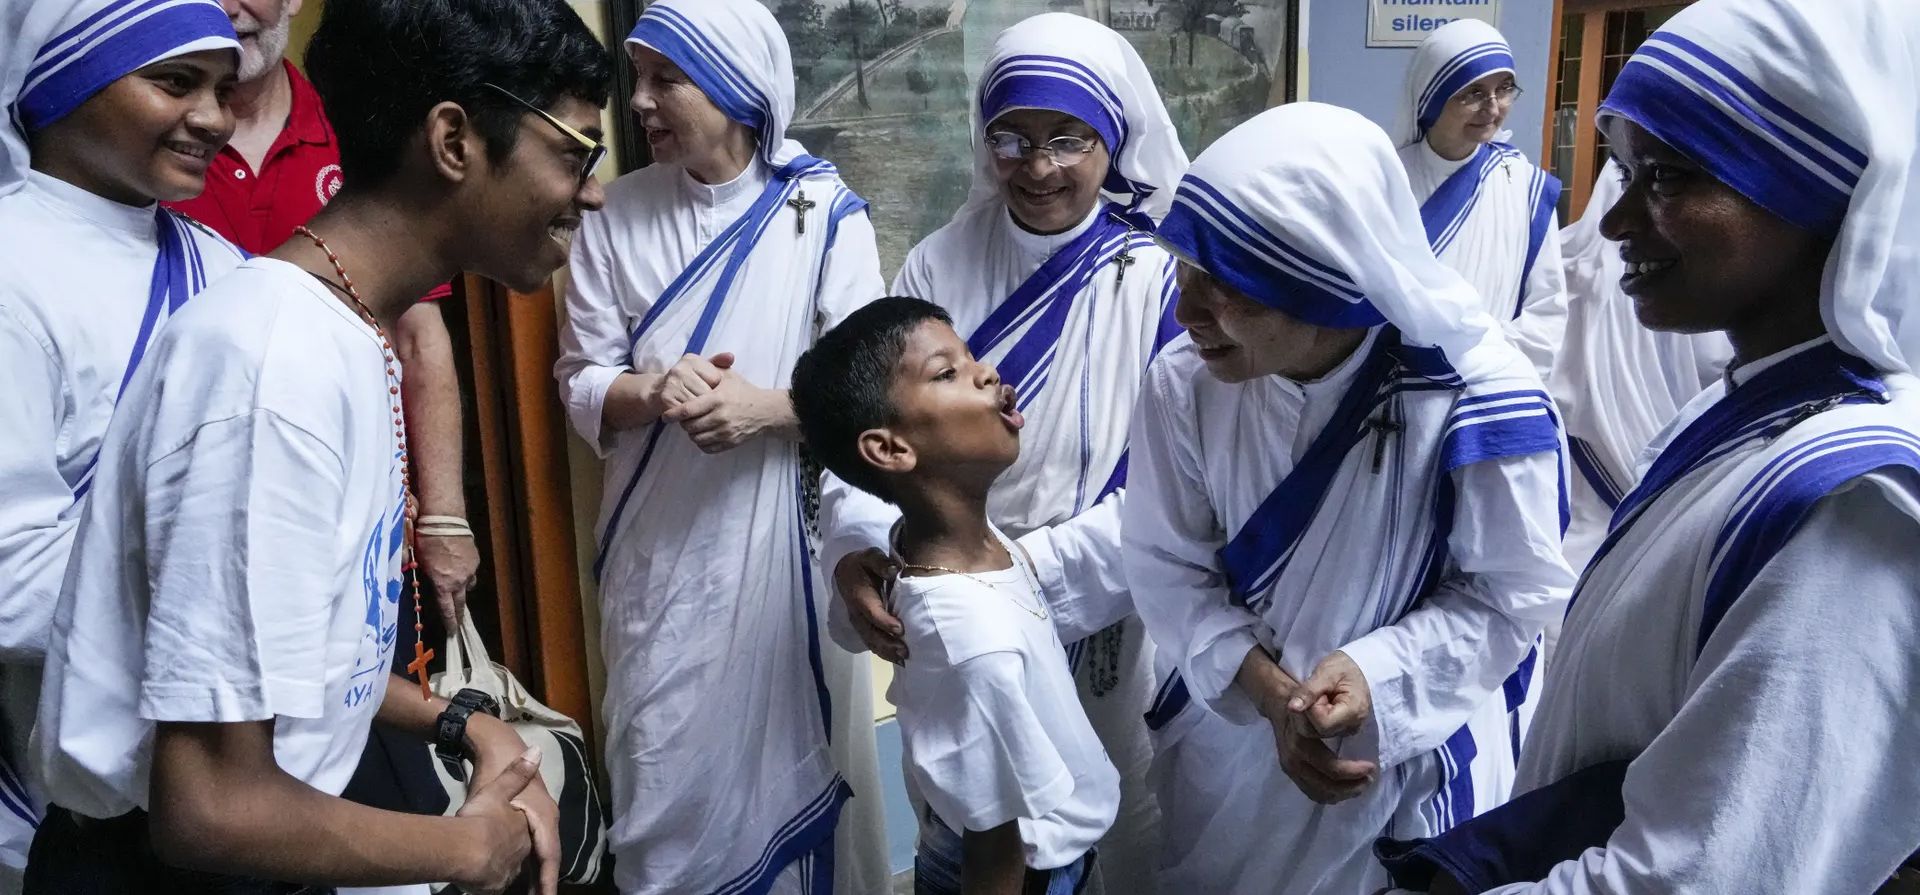 Niños con capacidades especiales saludan a las monjas de las Misioneras de la Caridad, la orden fundada por la Madre Teresa, después de un encuentro de oración para conmemorar el 25 aniversario de su muerte, Calcuta, India. Fotografía: Bikas Das/AP